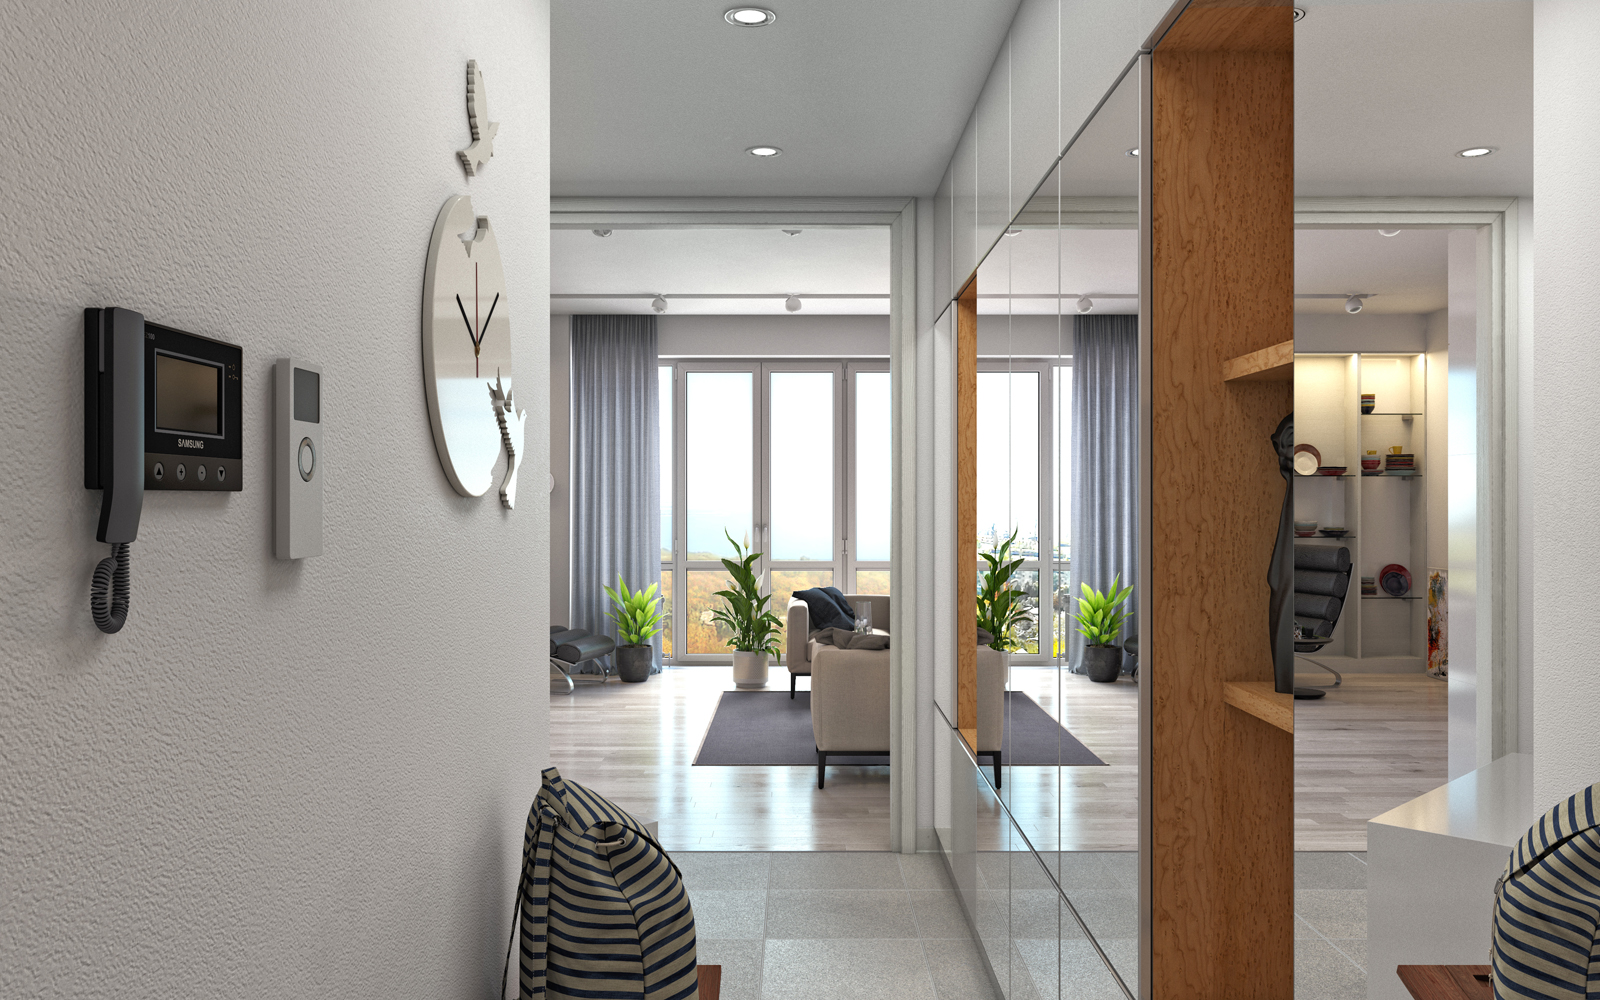 Complesso residenziale "Nobel" Appartamento con 1 camera da letto. in 3d max corona render immagine